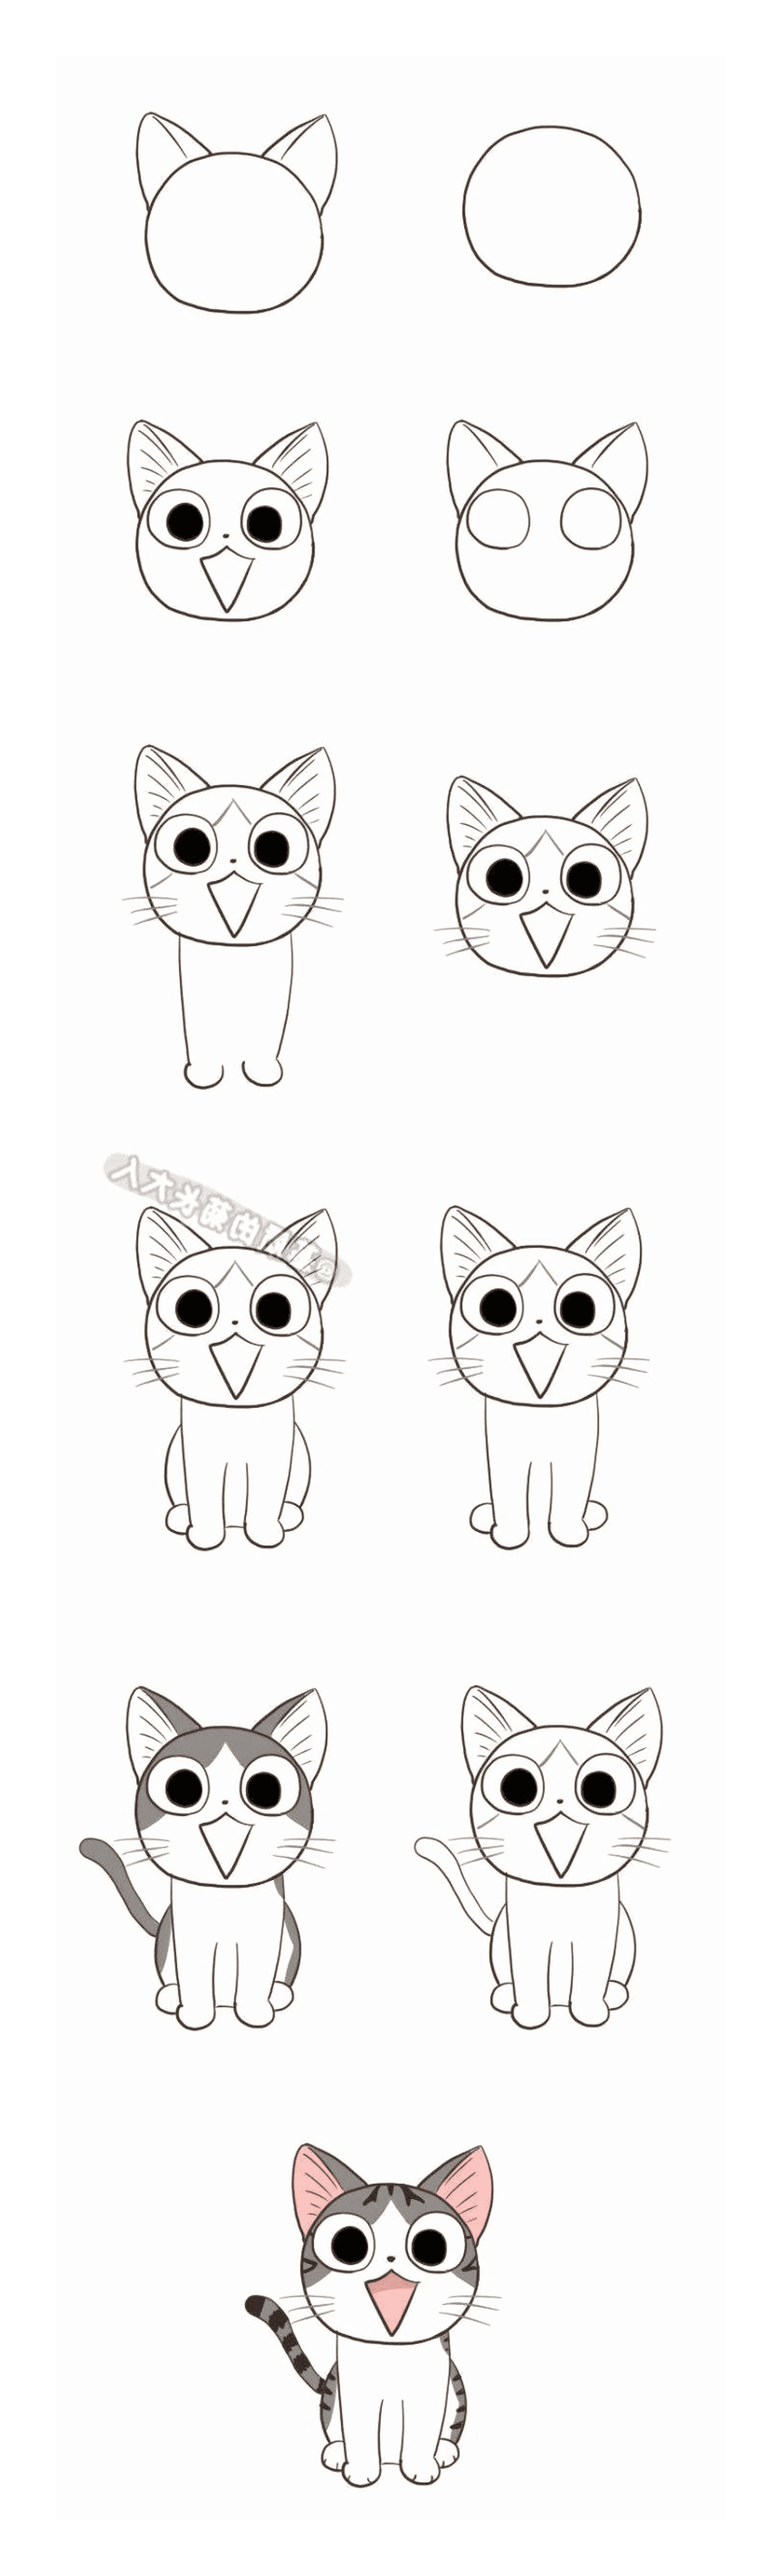  Cómo dibujar un gato kawaii 